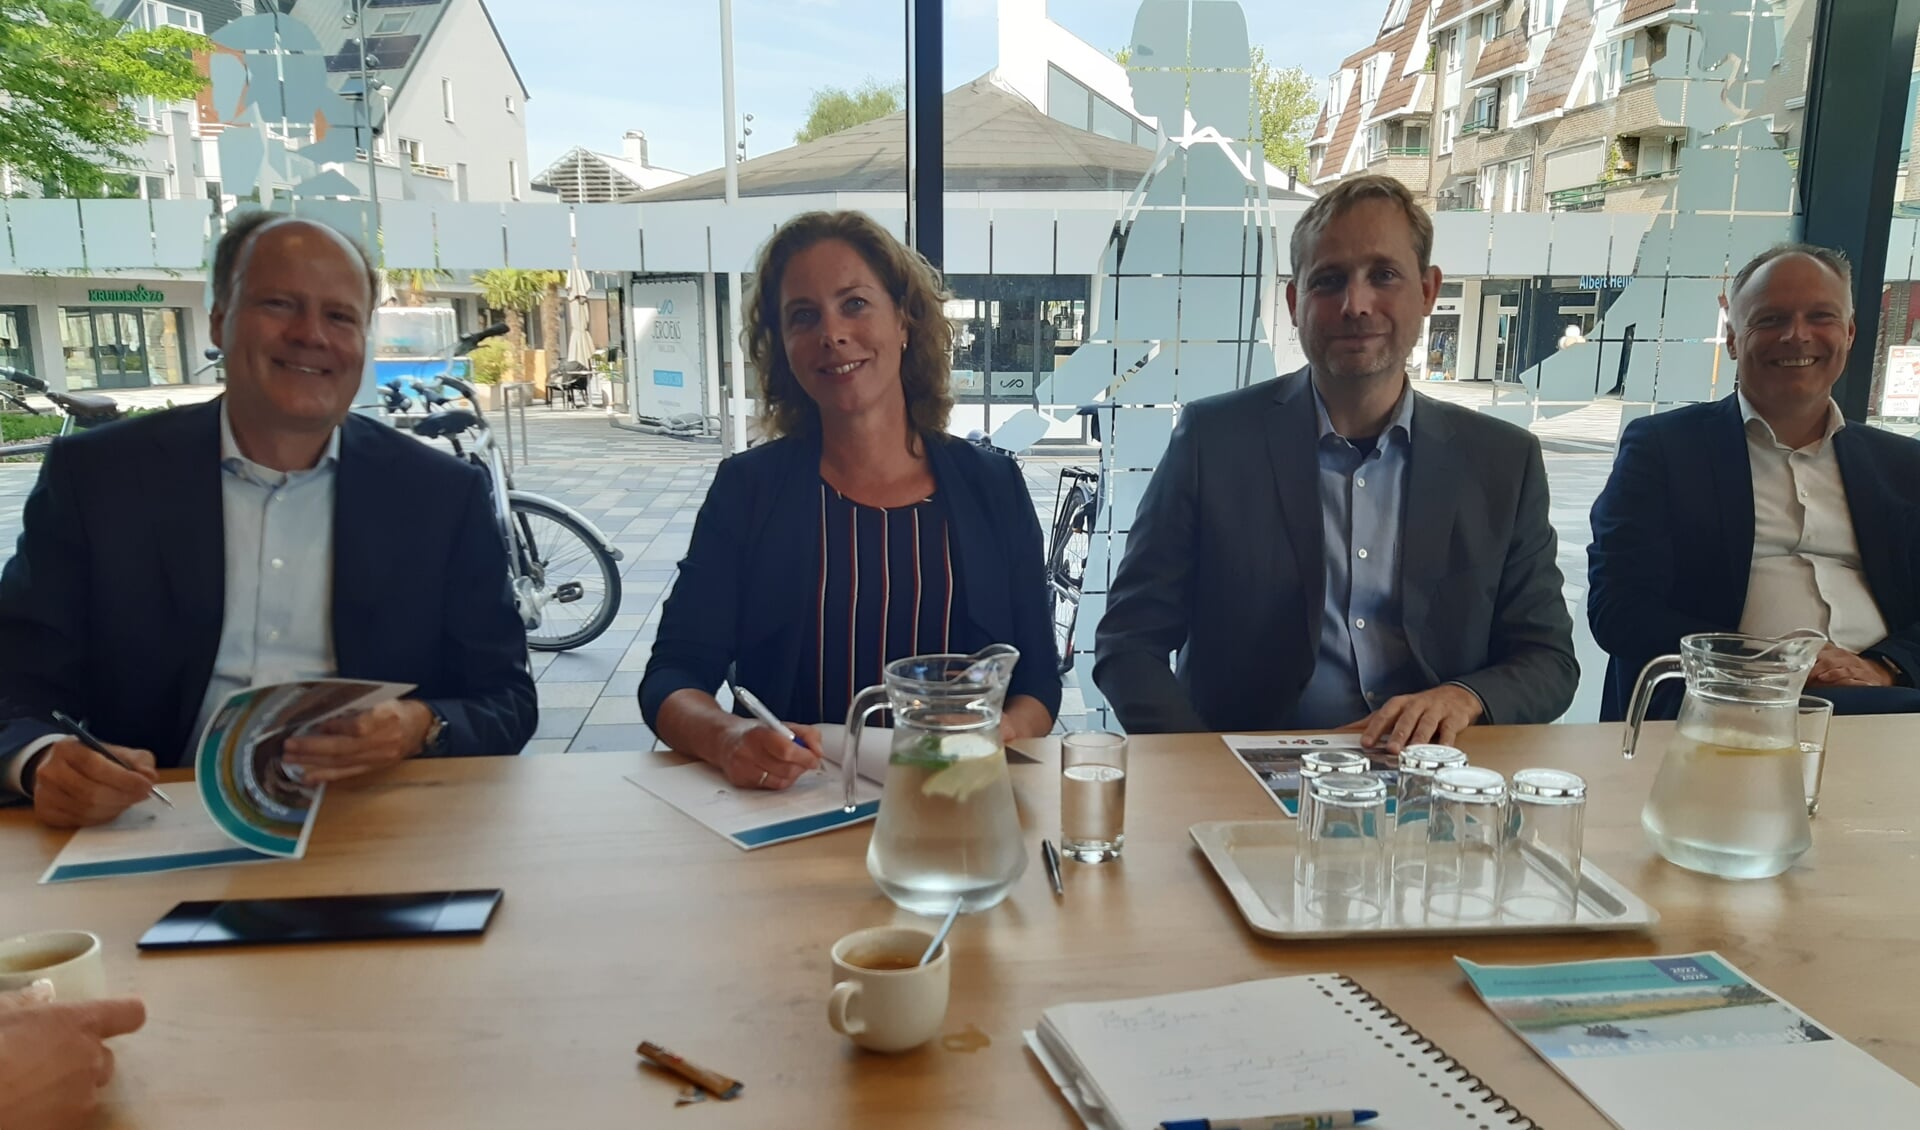 De coalitie in gelukkiger tijden bij de ondertekening van het akkoord, met v.l.n.r. Carlos Genders (VVD), Alexandra Kolkman (Lokaal Belangrijk), Bas van Os (CDA) en wethouder Patrick Kiel (VVD).